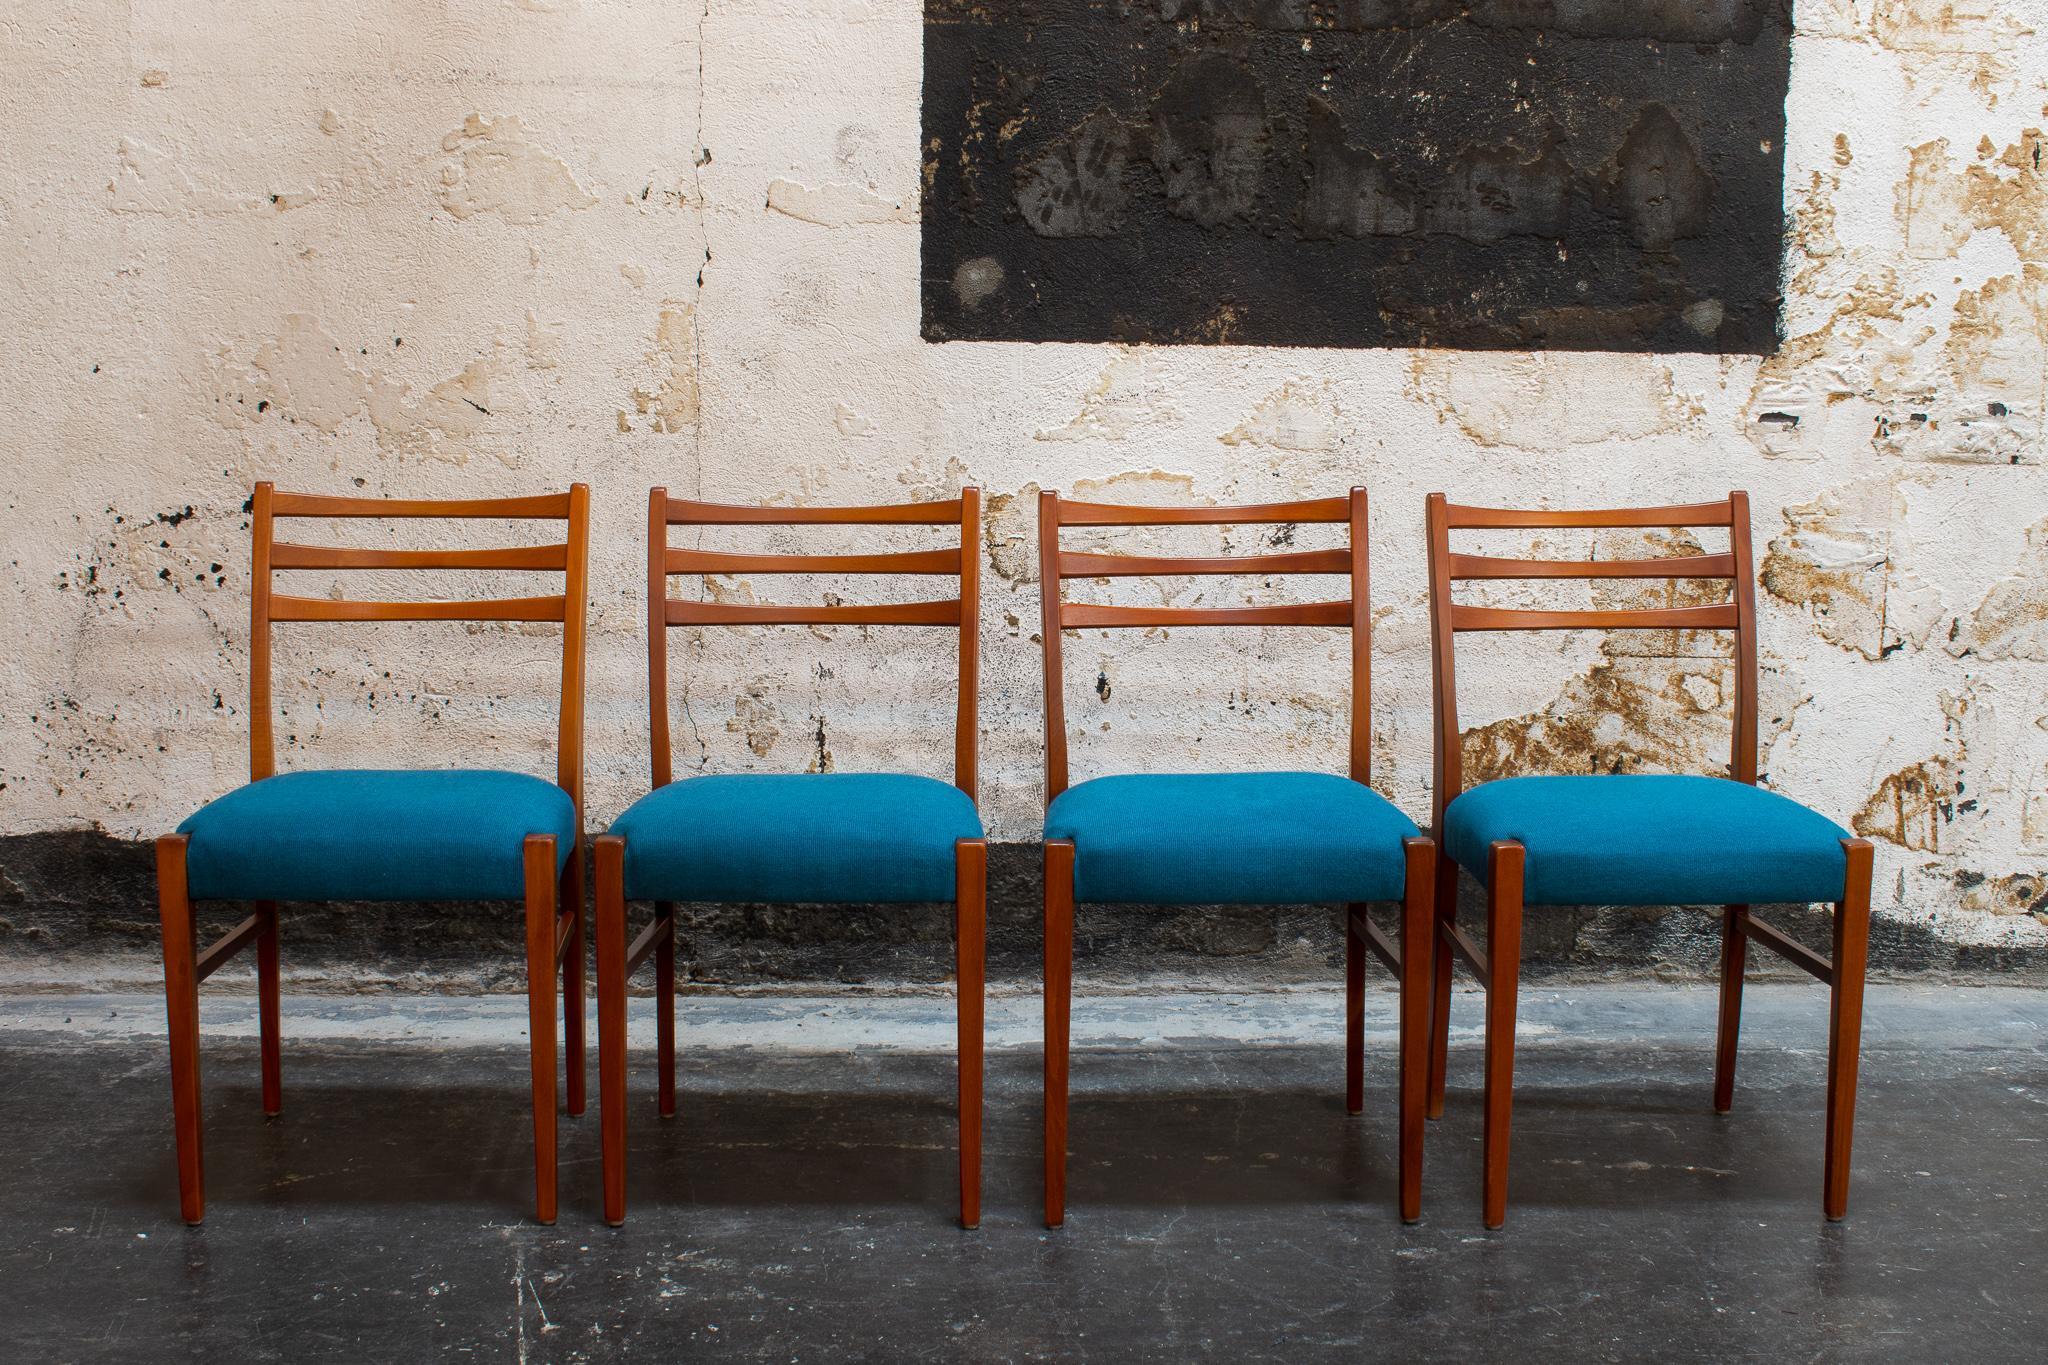 Satz von vier neu restaurierten Teak-Esszimmerstühlen aus Schweden, um 1960. Mit blauem Rippenstoff gepolstert und zur sofortigen Lieferung bereit.